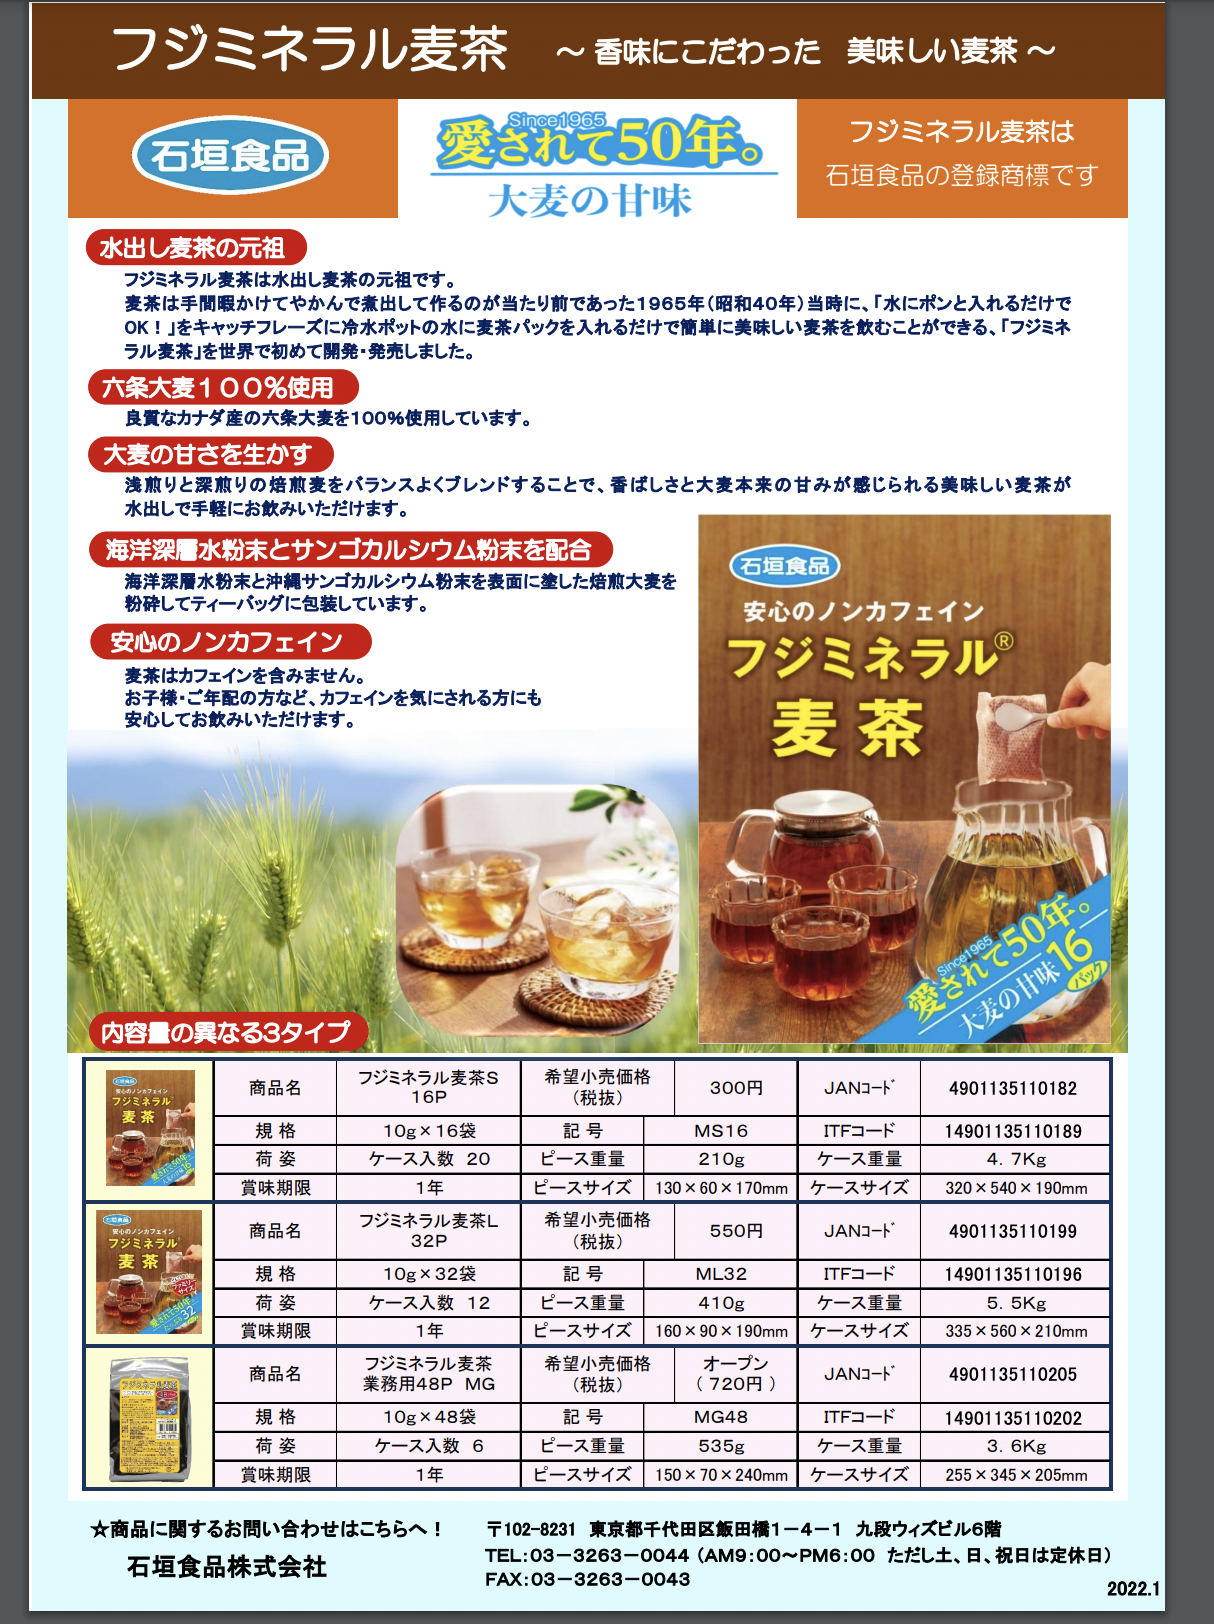 石垣食品お茶製品 PDFチラシ